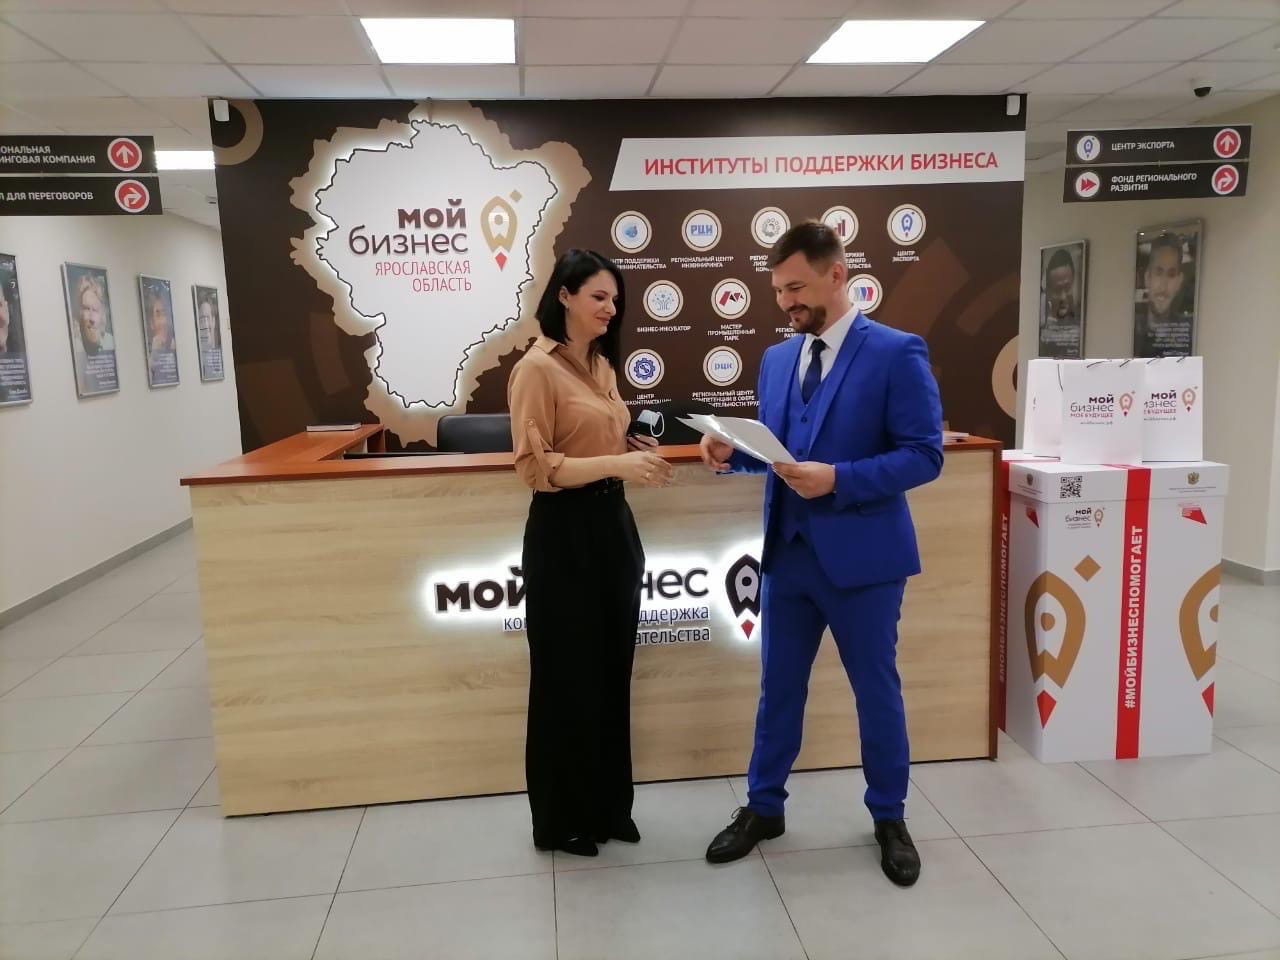 В ярославском центре «Мой бизнес» состоялось награждение победителей Всероссийского Конкурса 